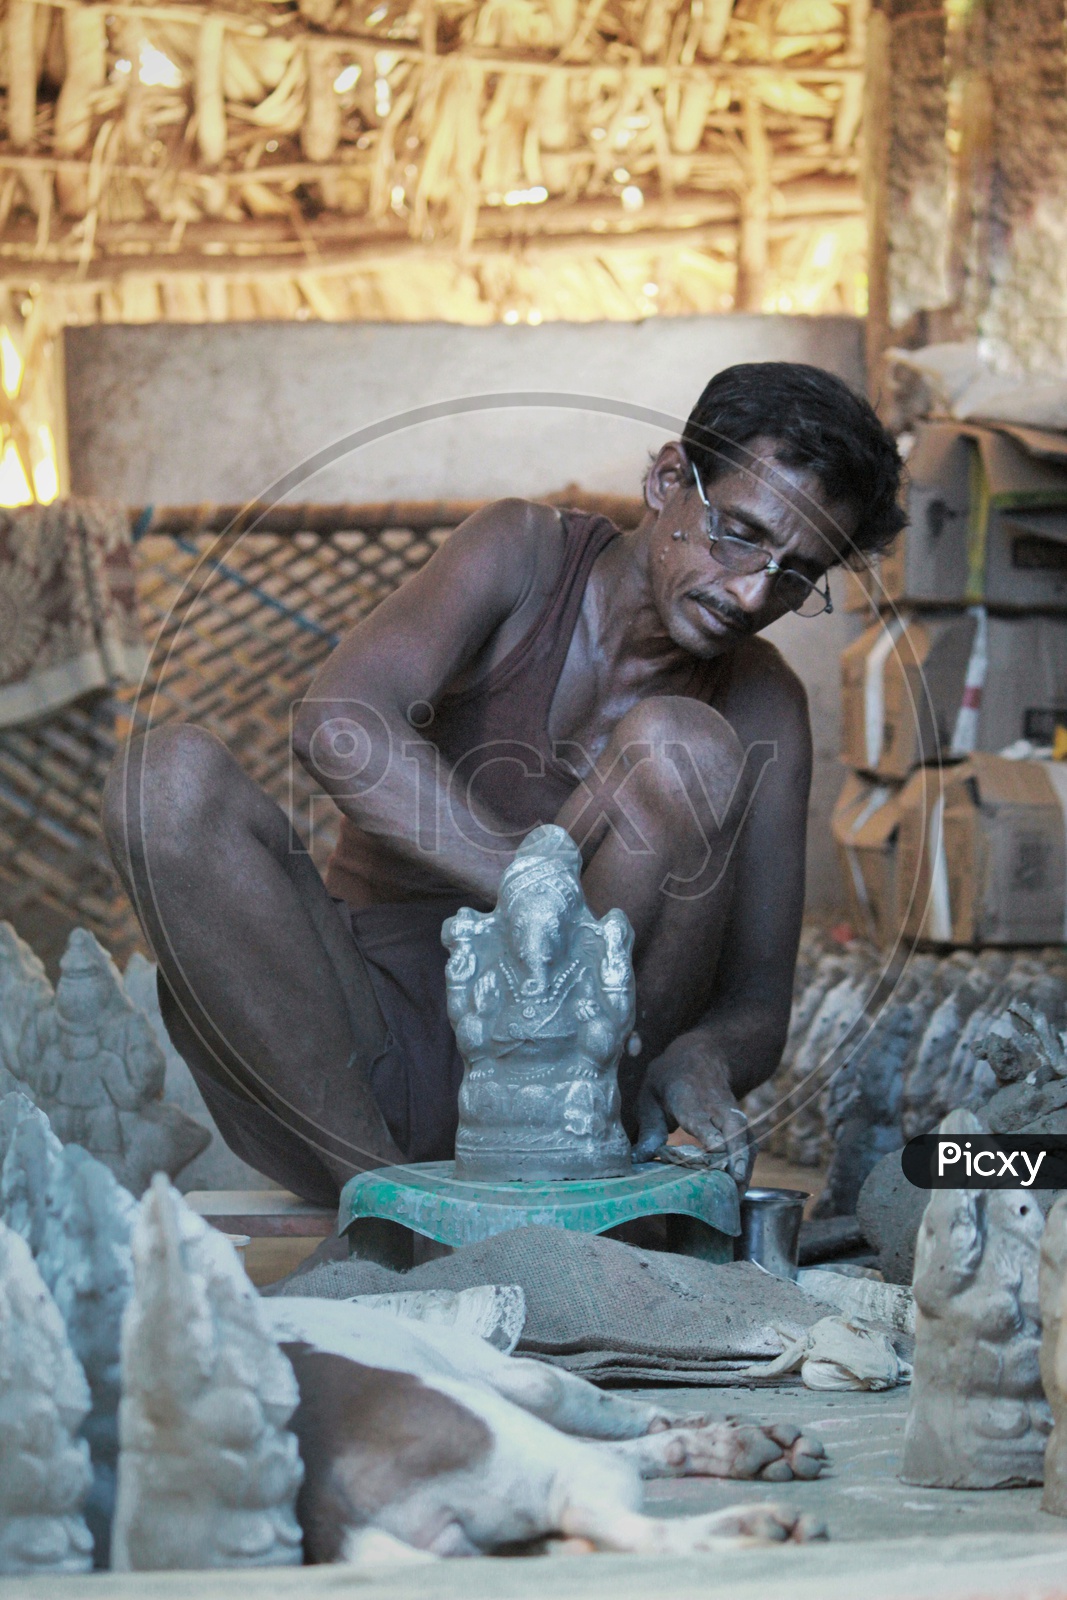 A Man making the ganesh idol.